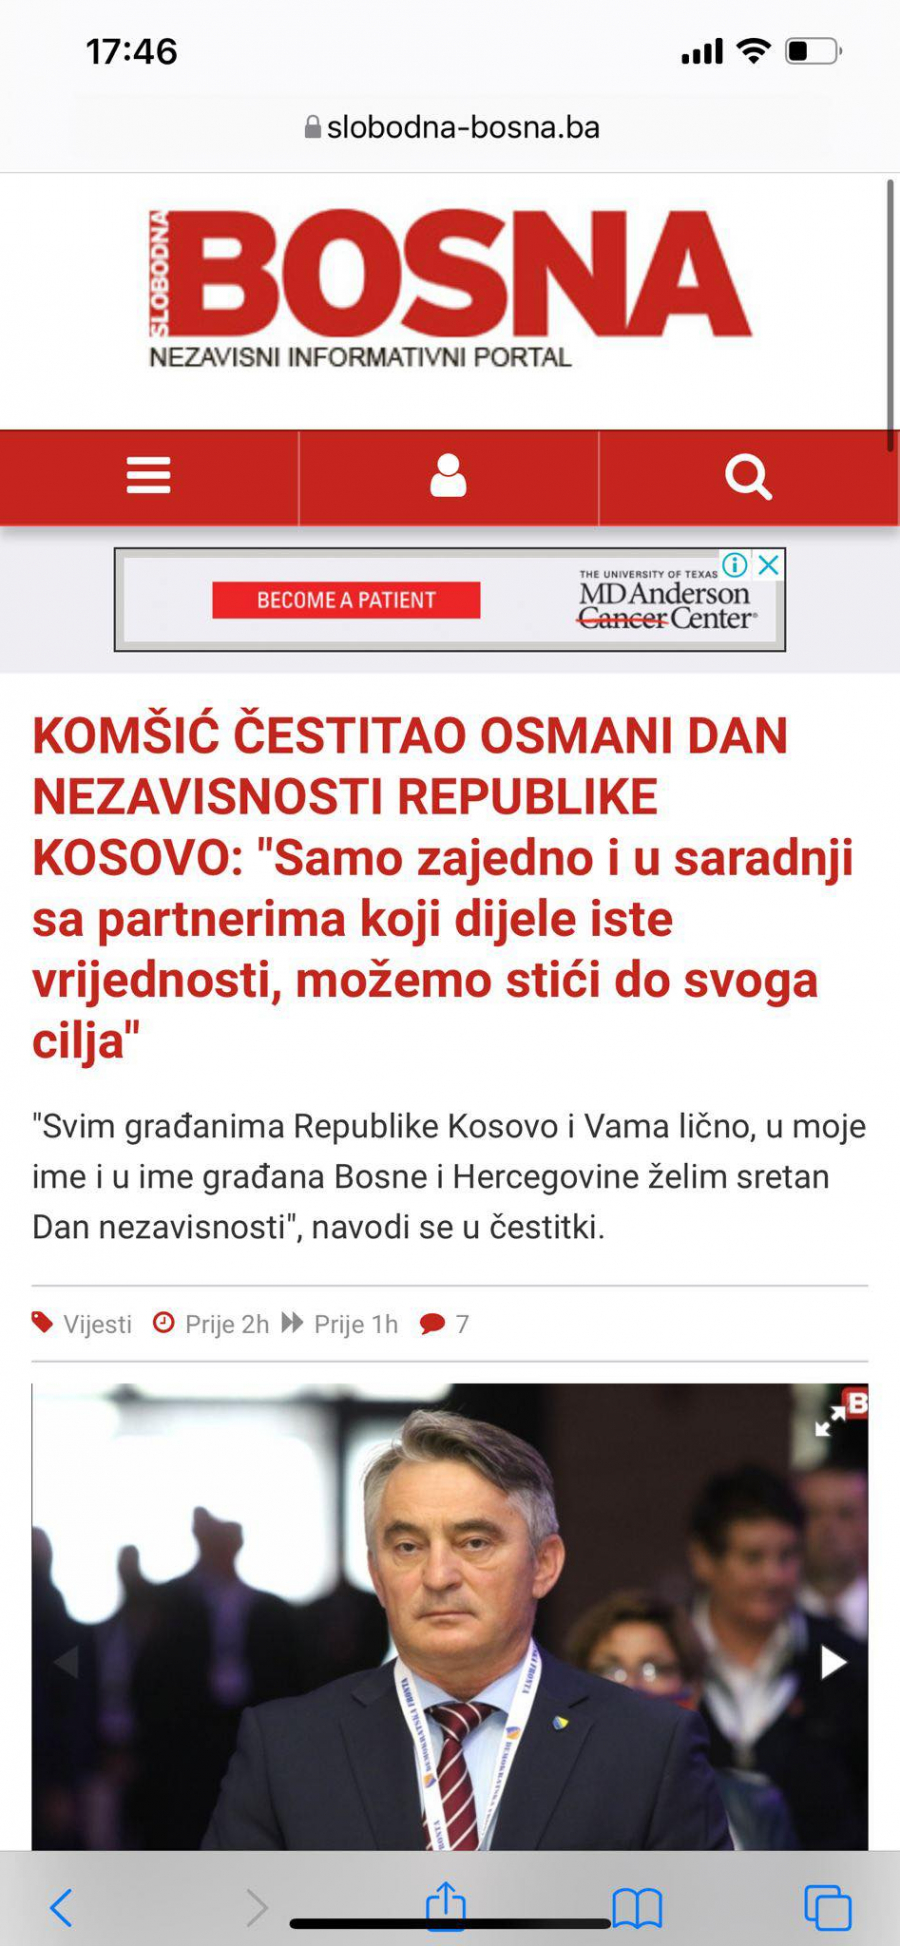 SKANDAL! Željko Komšić neovlašćeno čestitao 